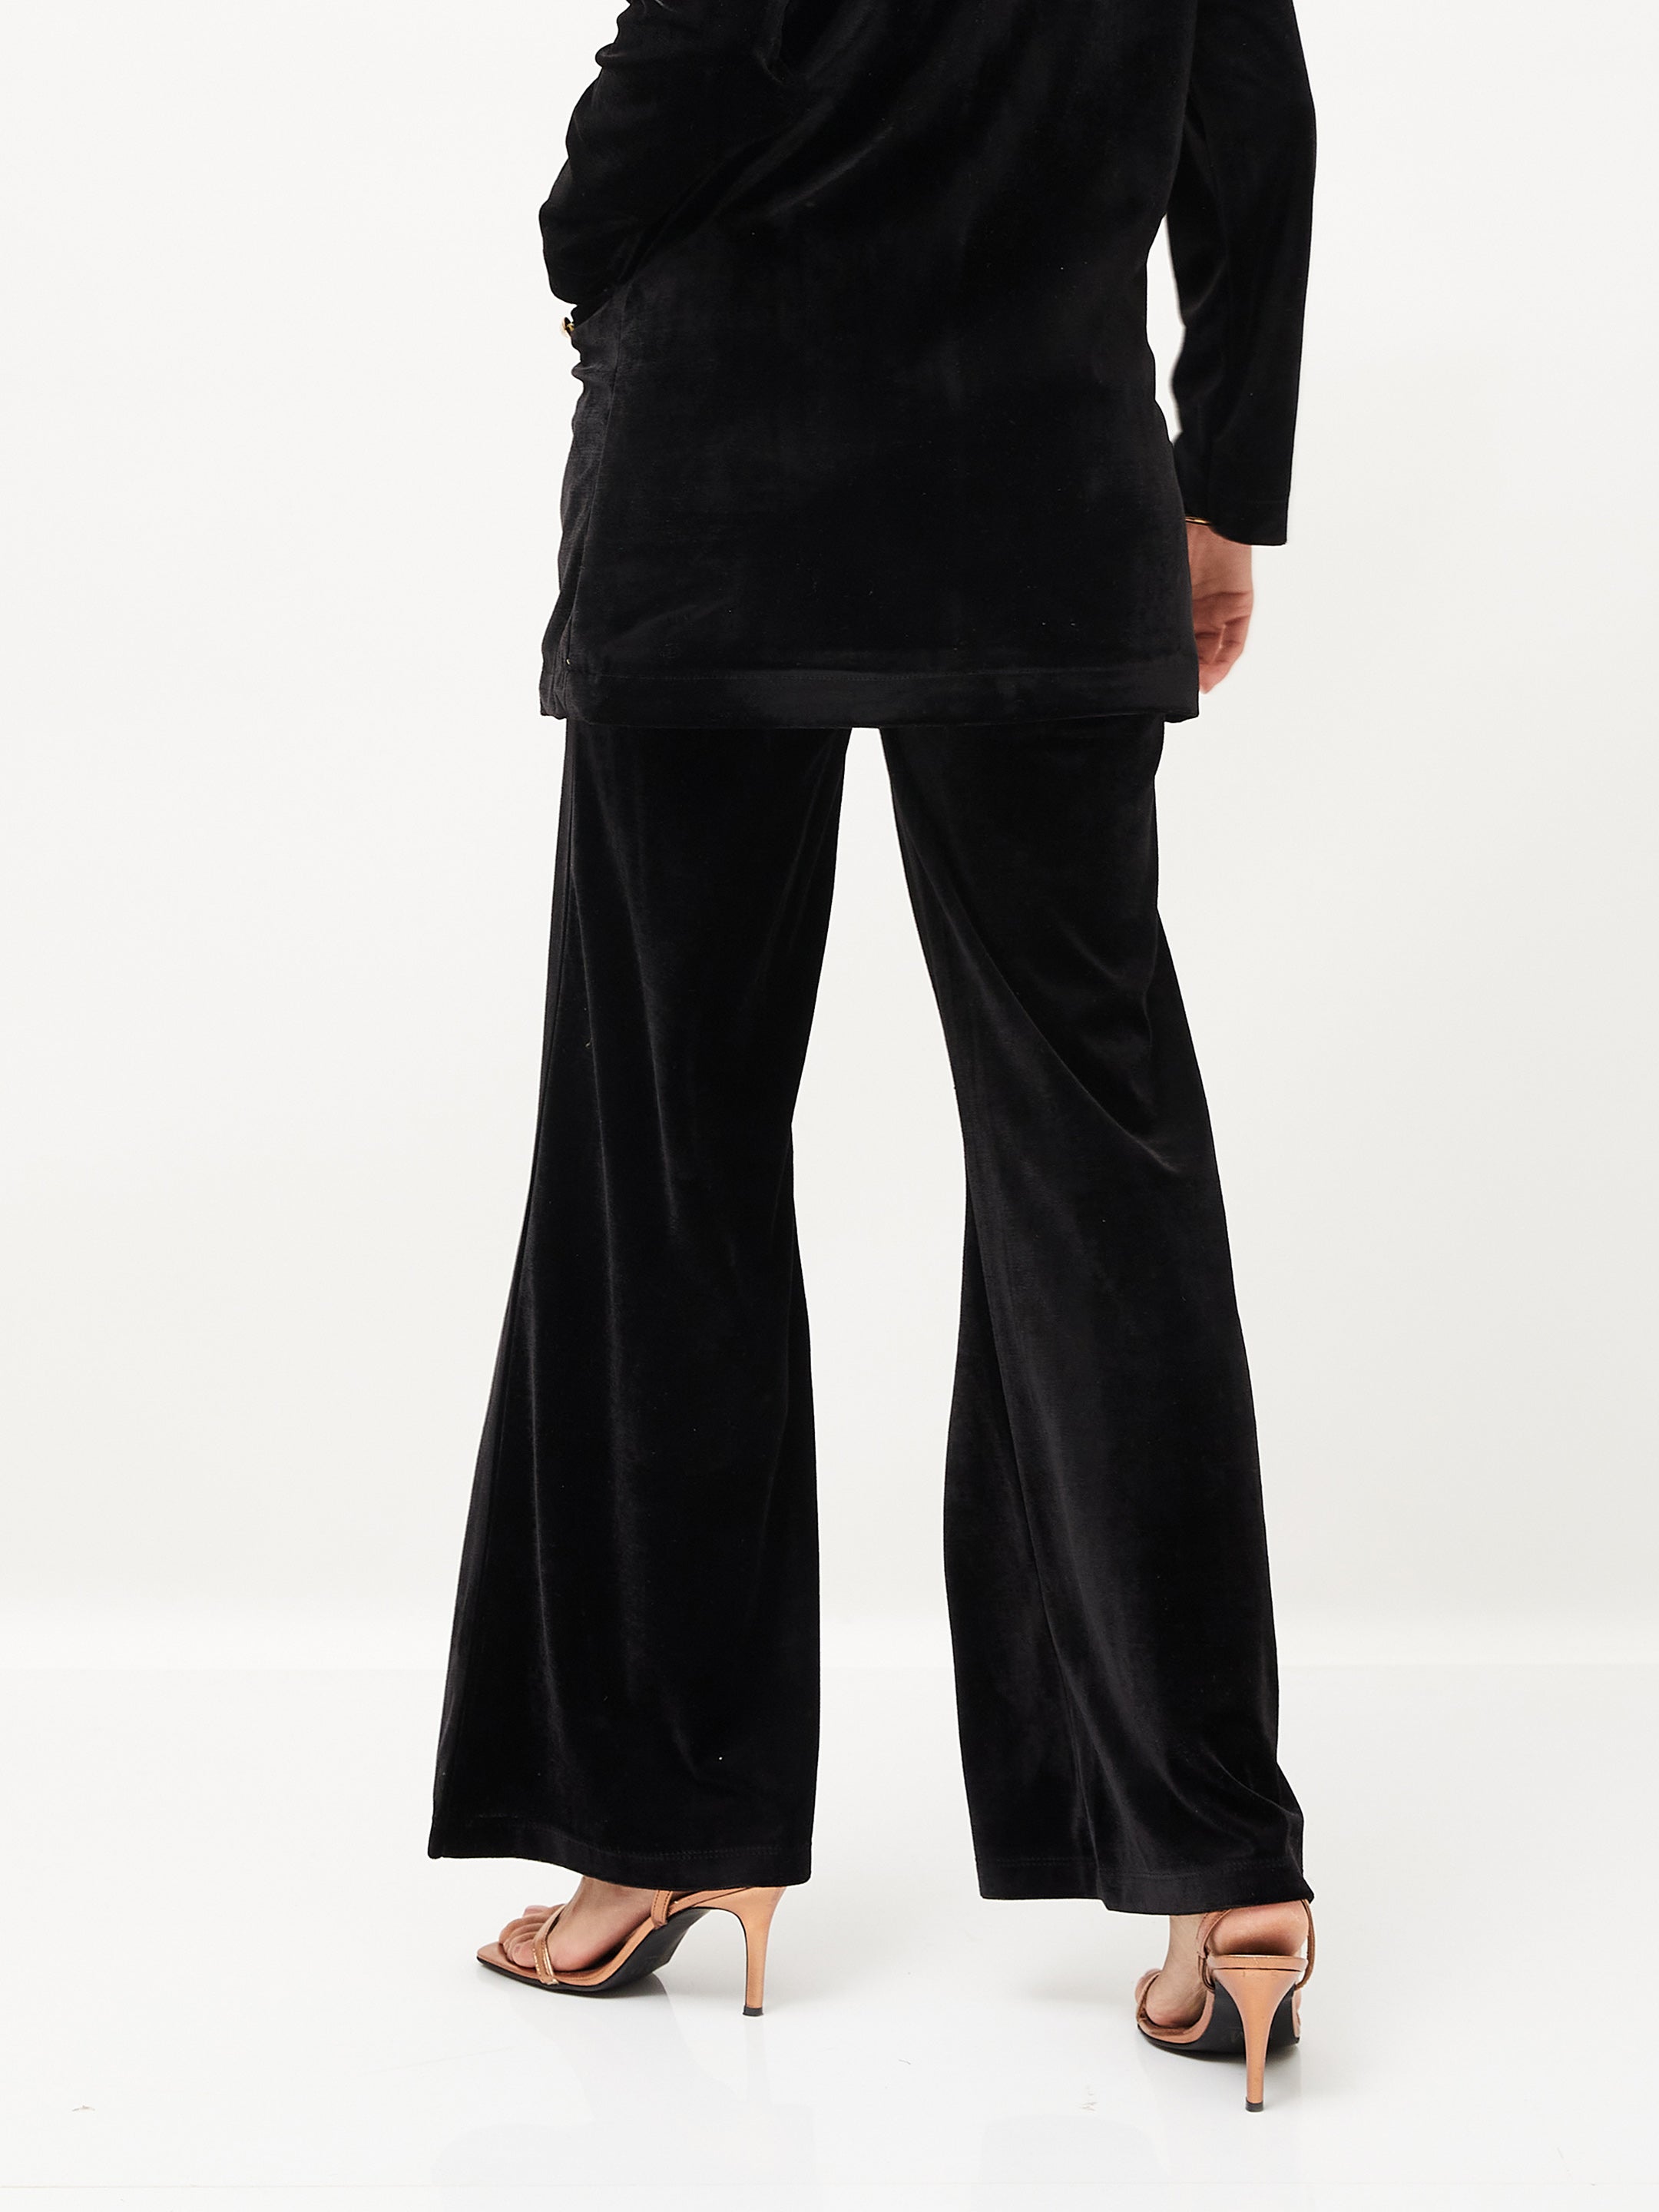 Women's Black Velvet Bell Bottom Pants - Lyush